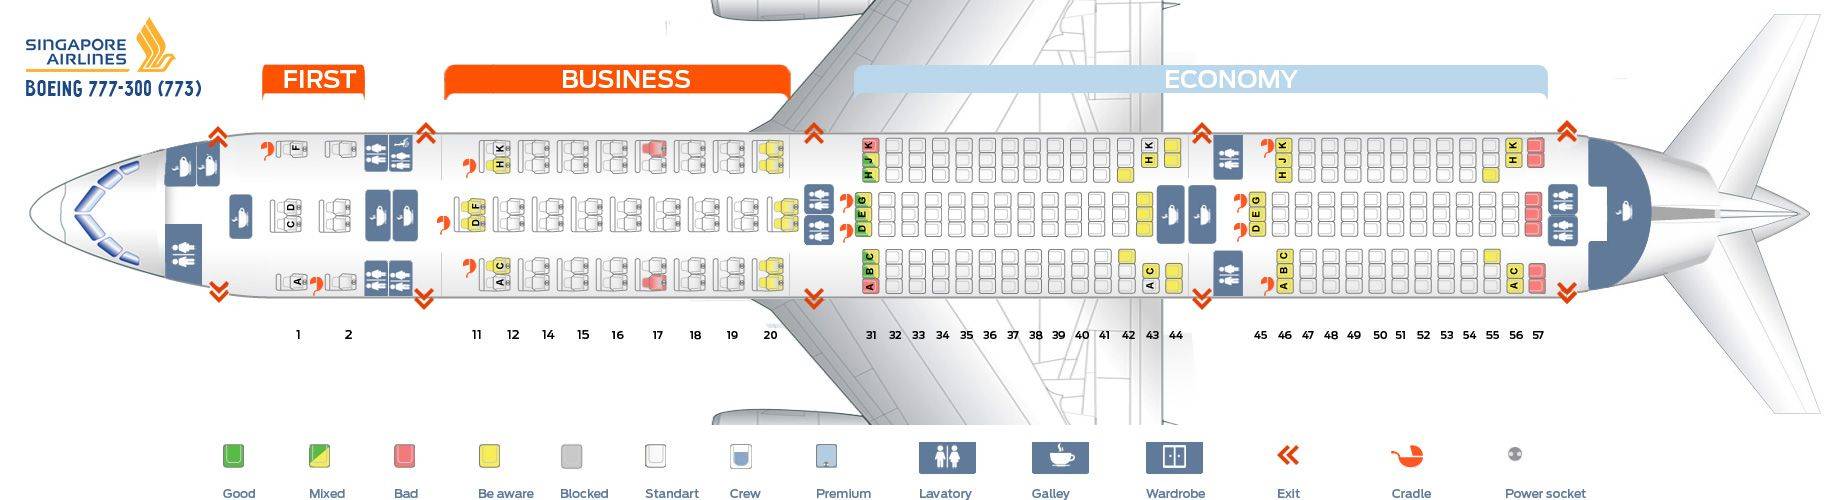 Схема салона и лучшие места в самолете boeing 737-800 авиакомпании «аэрофлот»